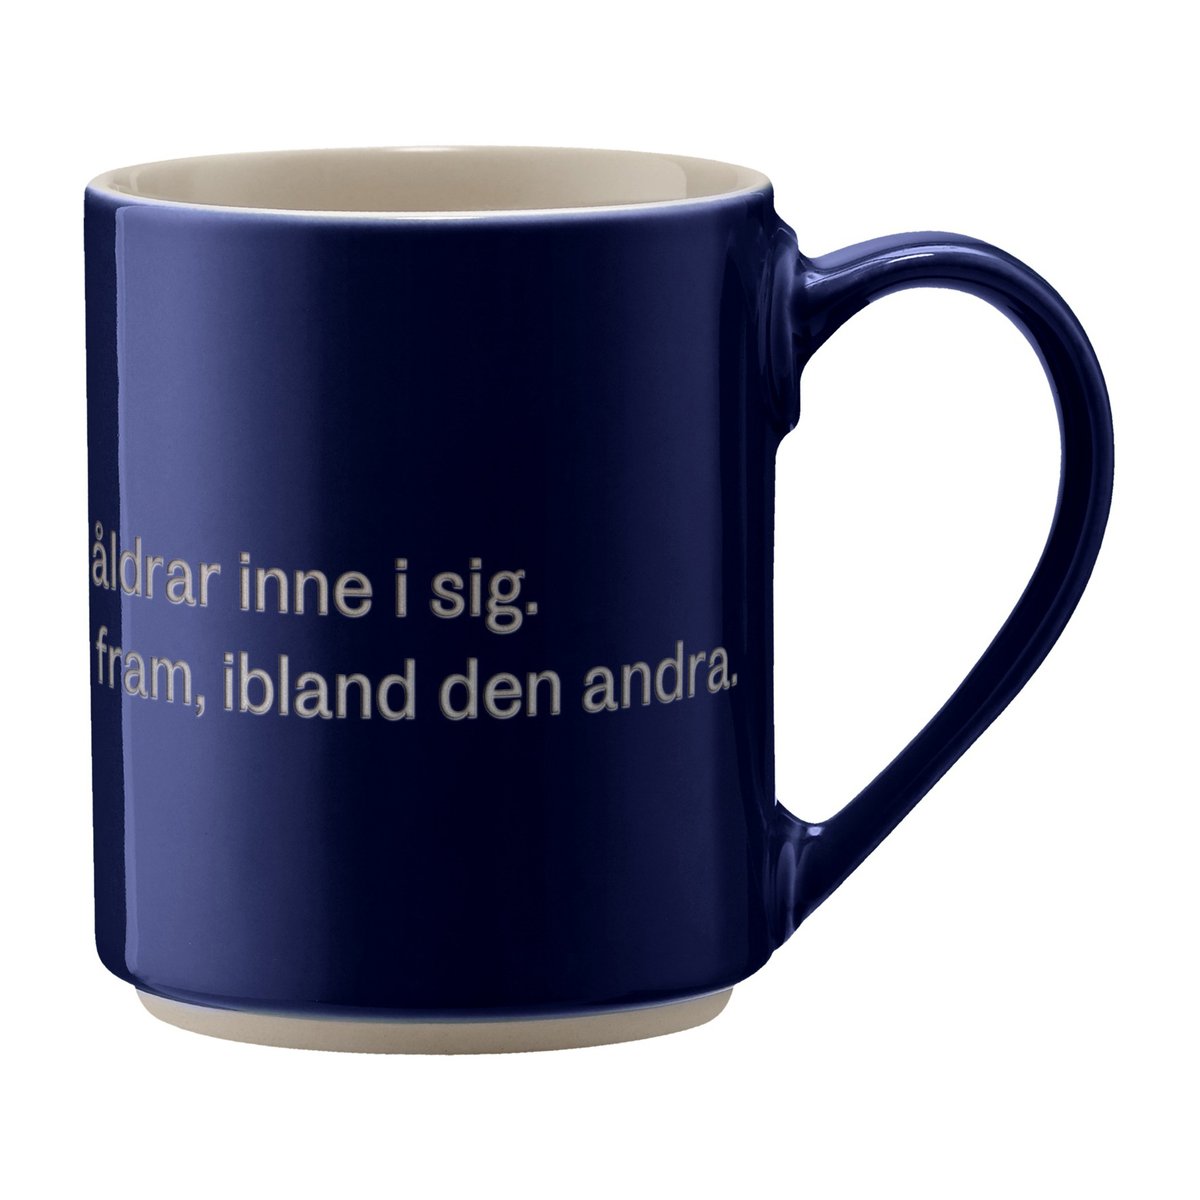 design house stockholm mug astrid lindgren, man har ju alla åldrar texte en suédois